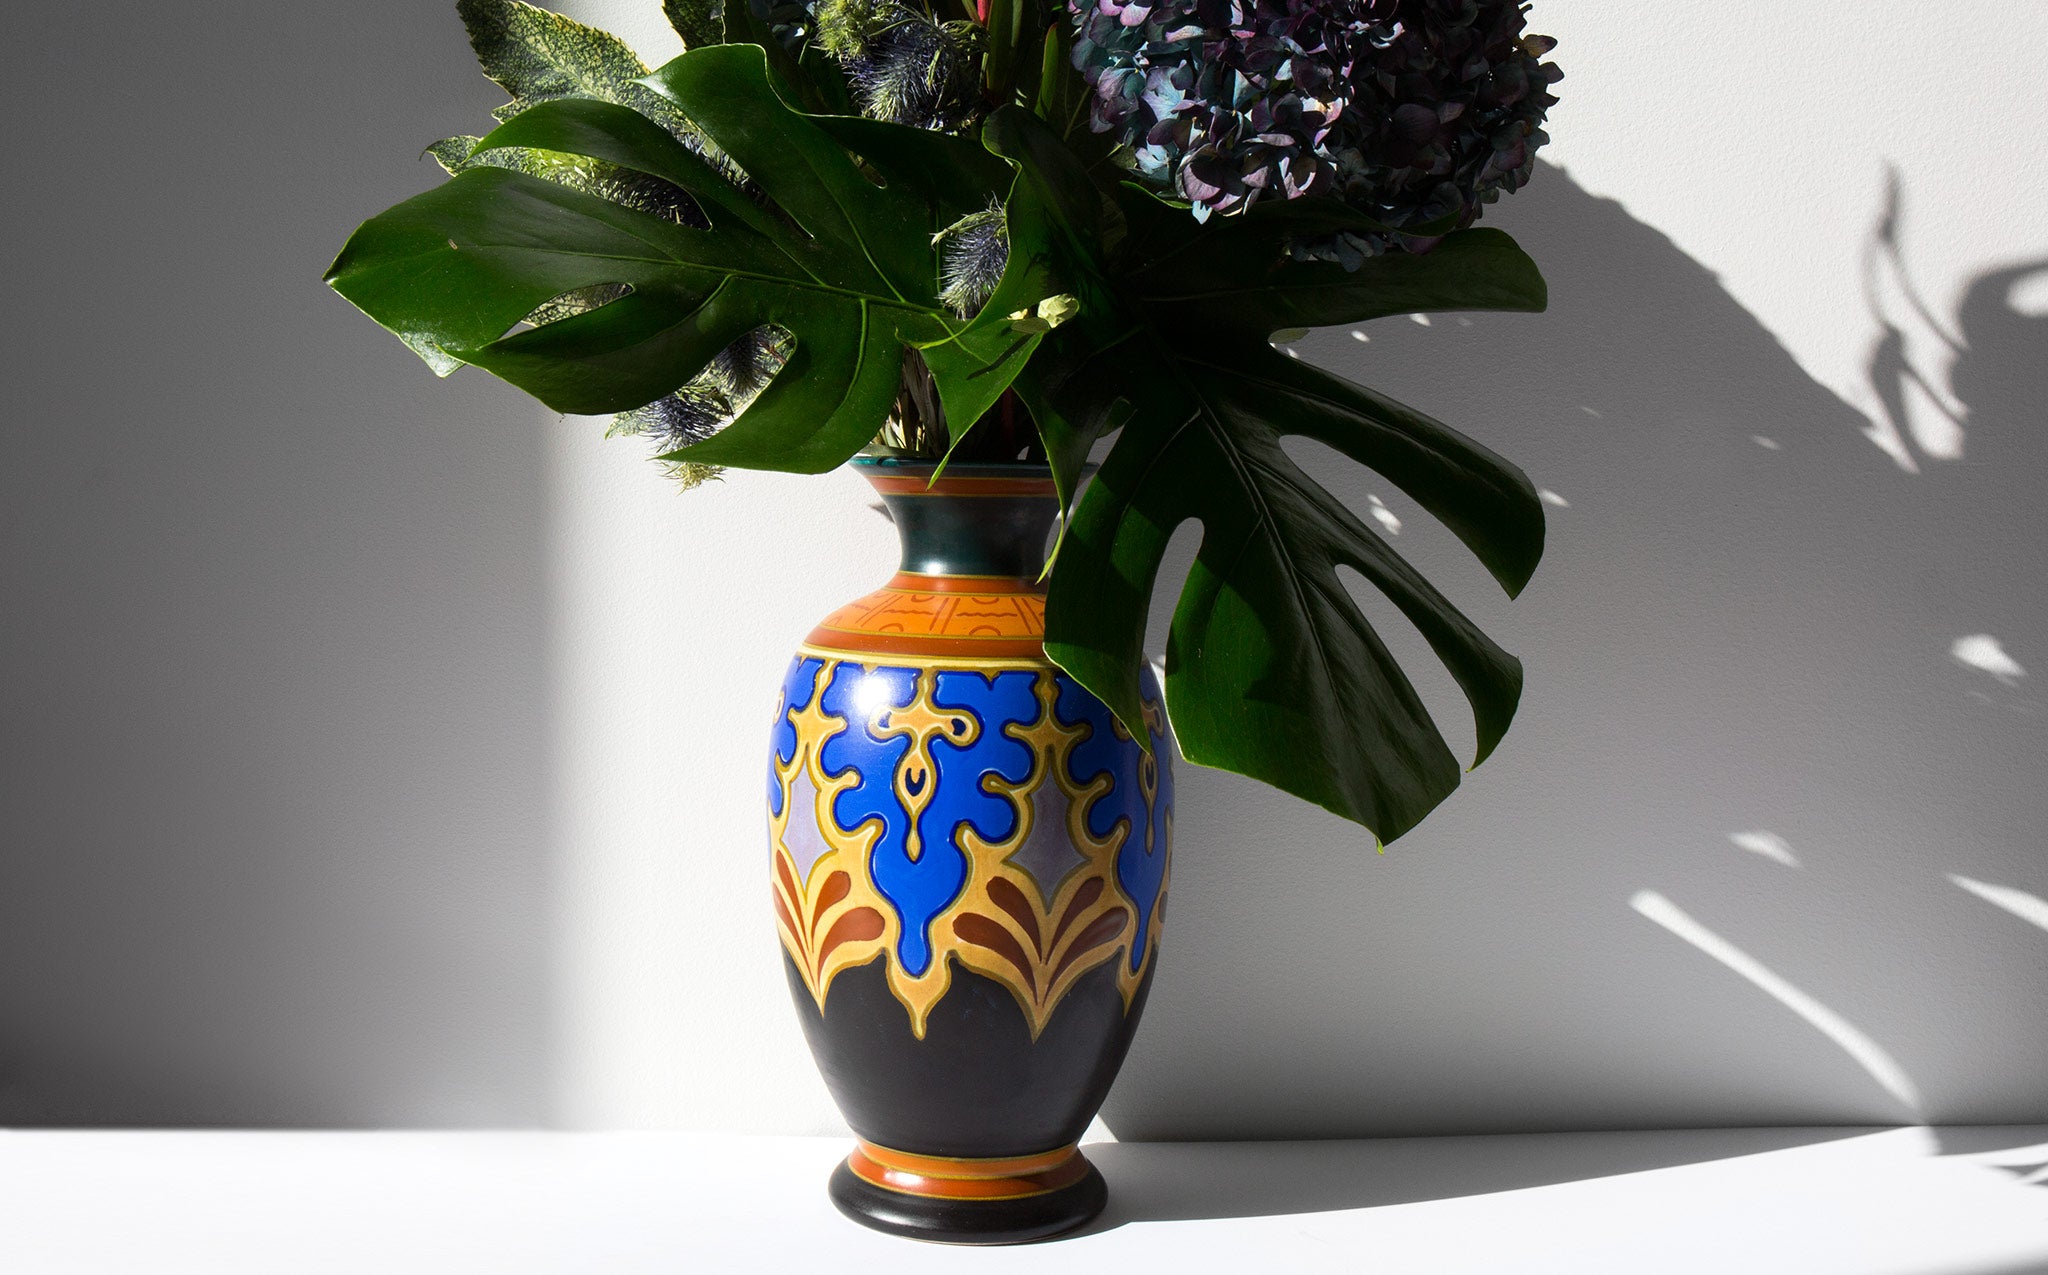 Gouda Art Pottery Vase